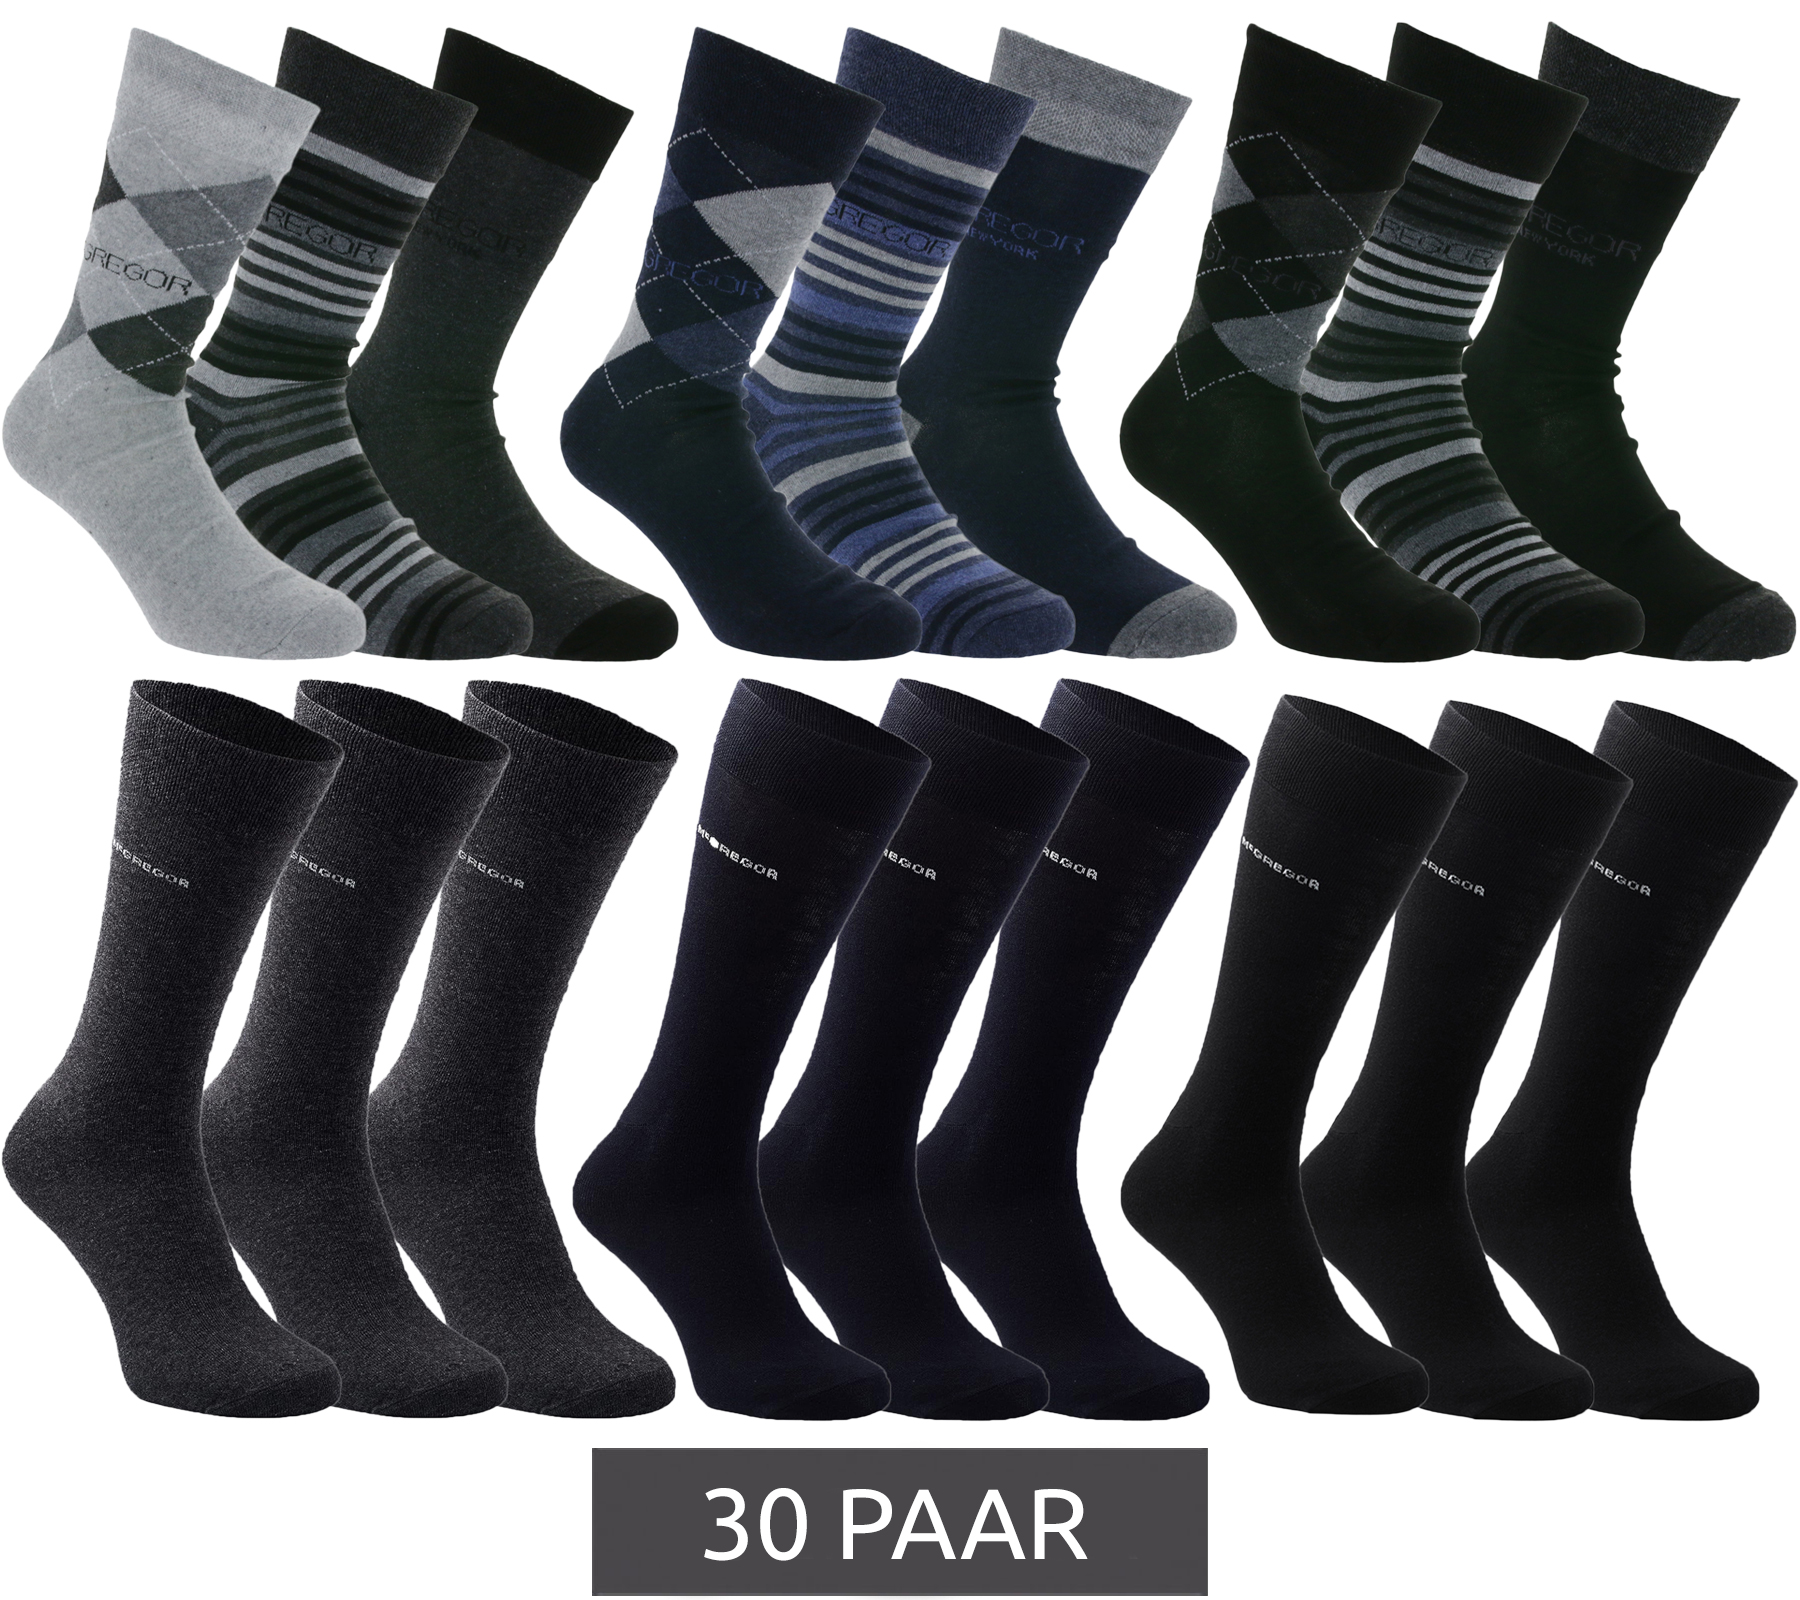 30 Paar McGREGOR Strümpfe Freizeit-Socken Unifarben oder verschiedene Muster Business-Socken im Vorteilspack Schwarz Dunkelblau oder Grau